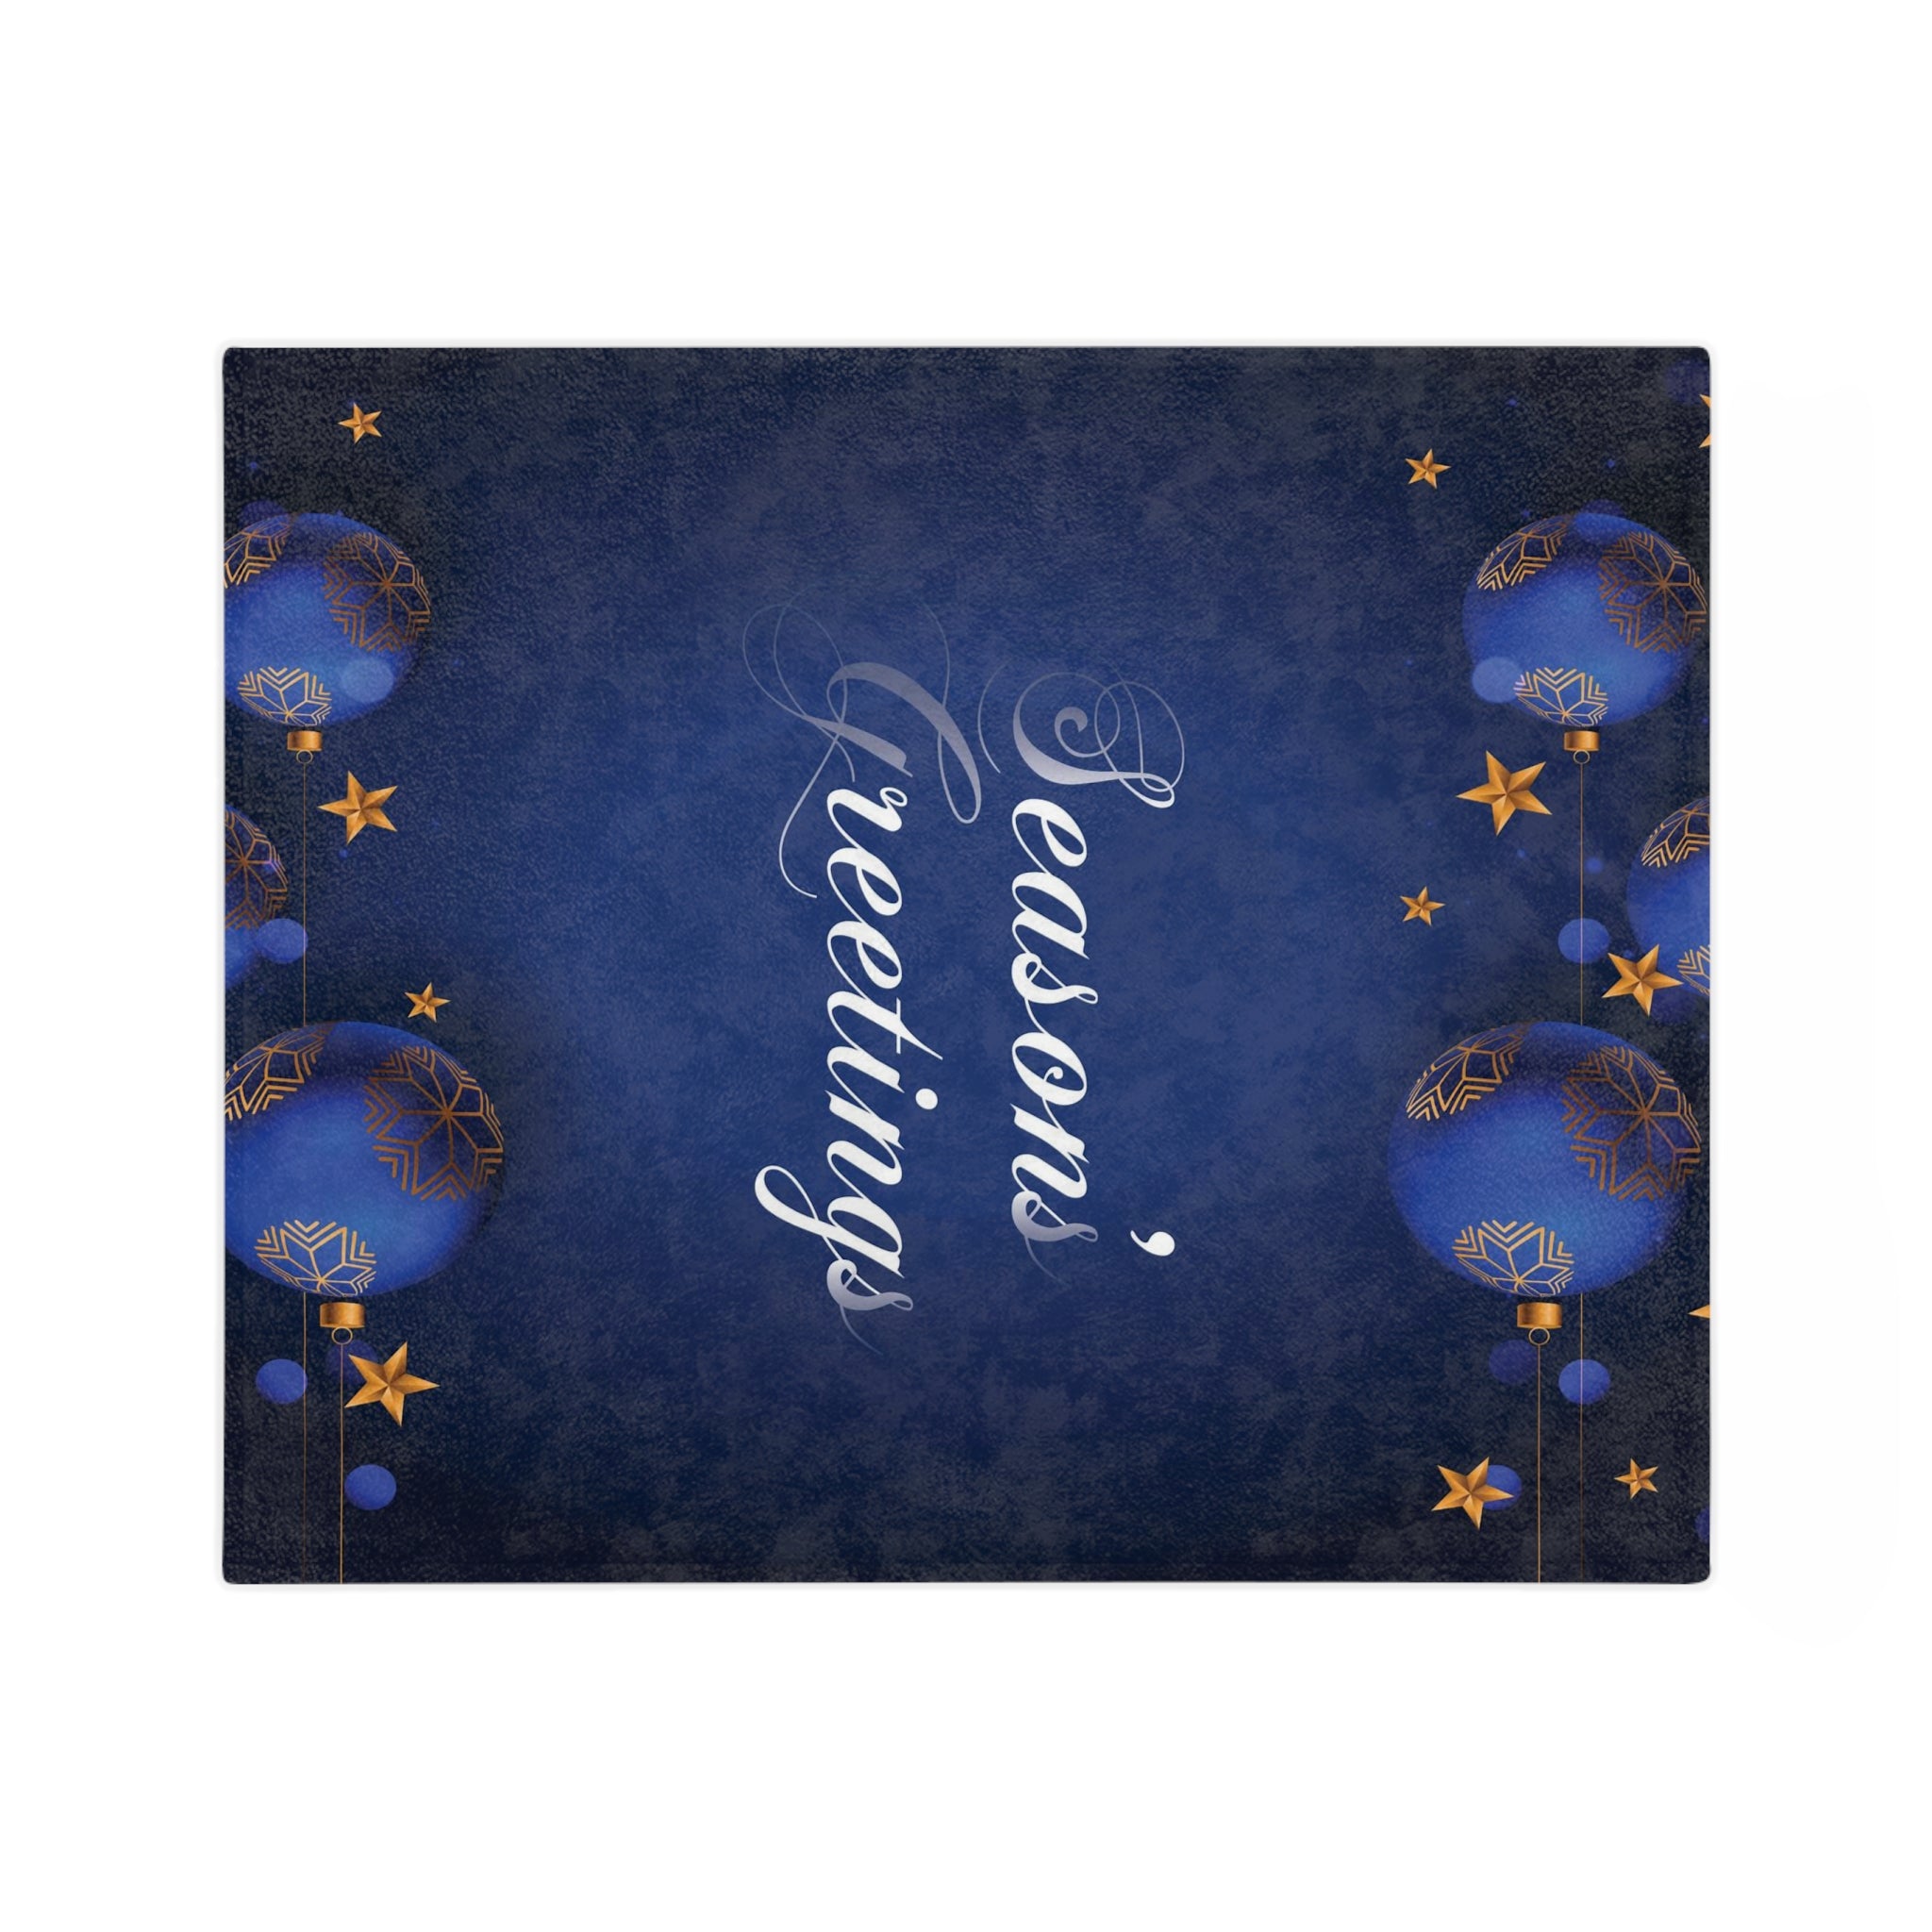 Christmas Velveteen Minky Blanket, Dark Blue